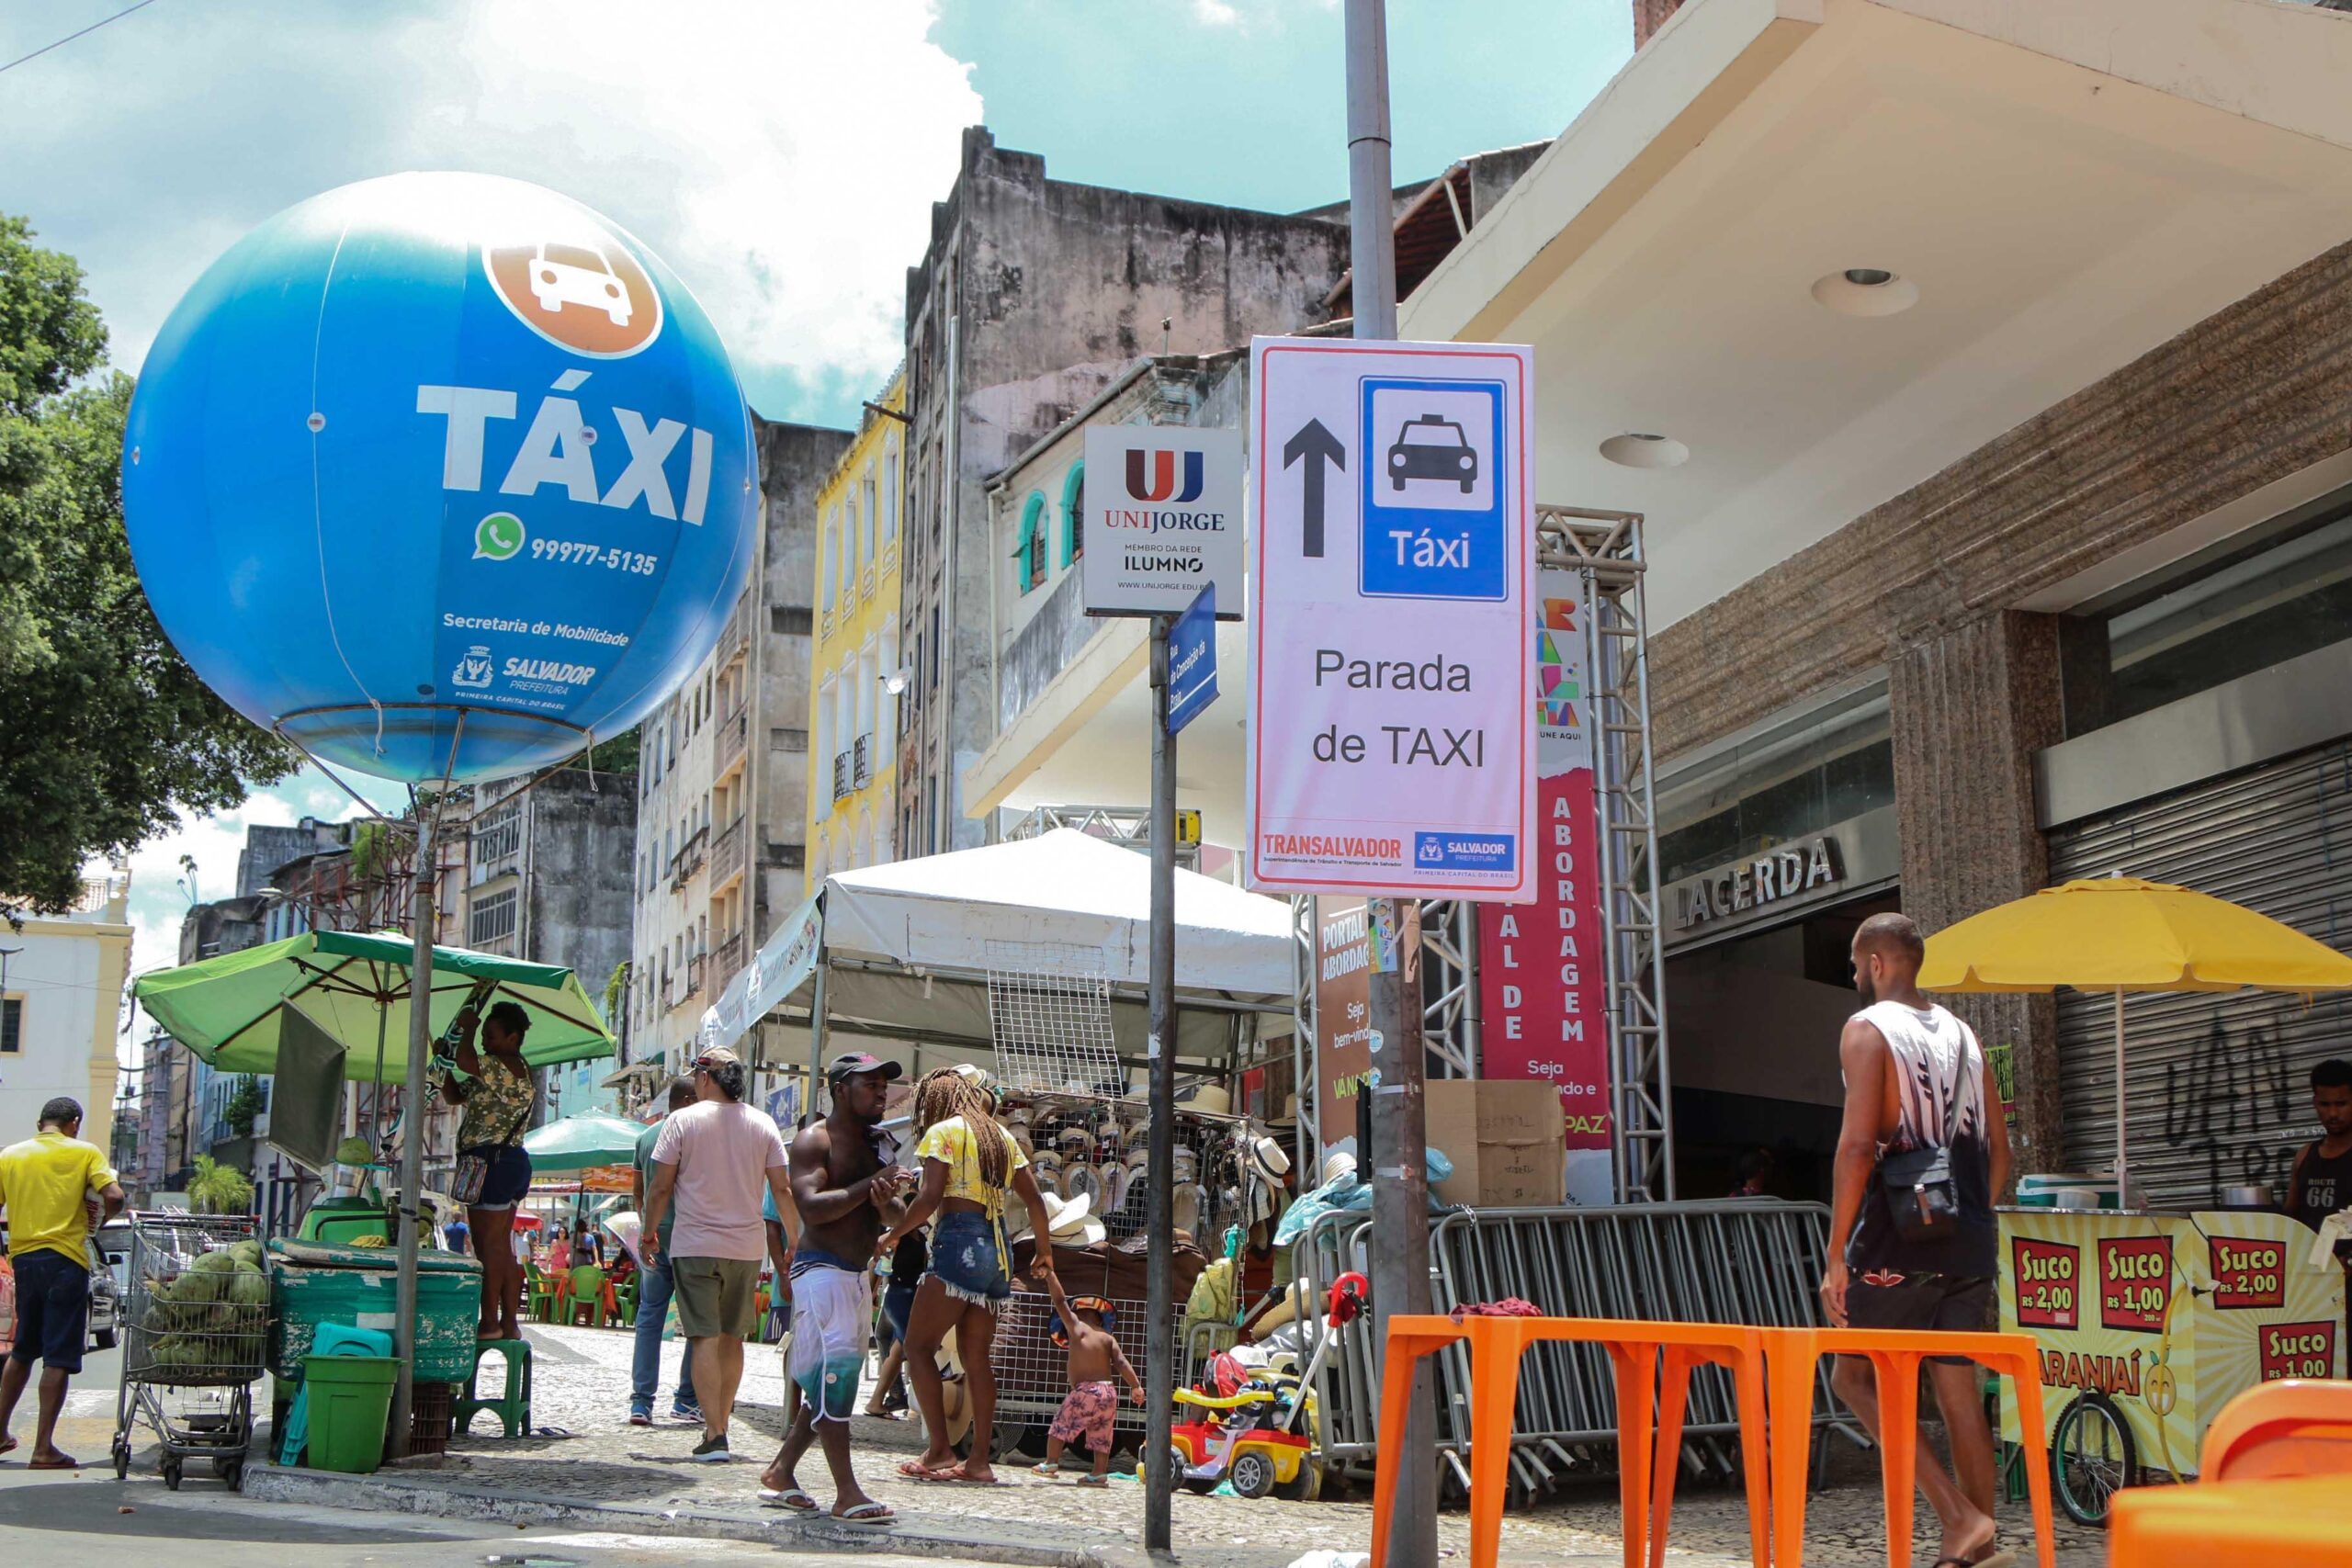 Táxis terão Bandeira 2 liberada durante o Carnaval